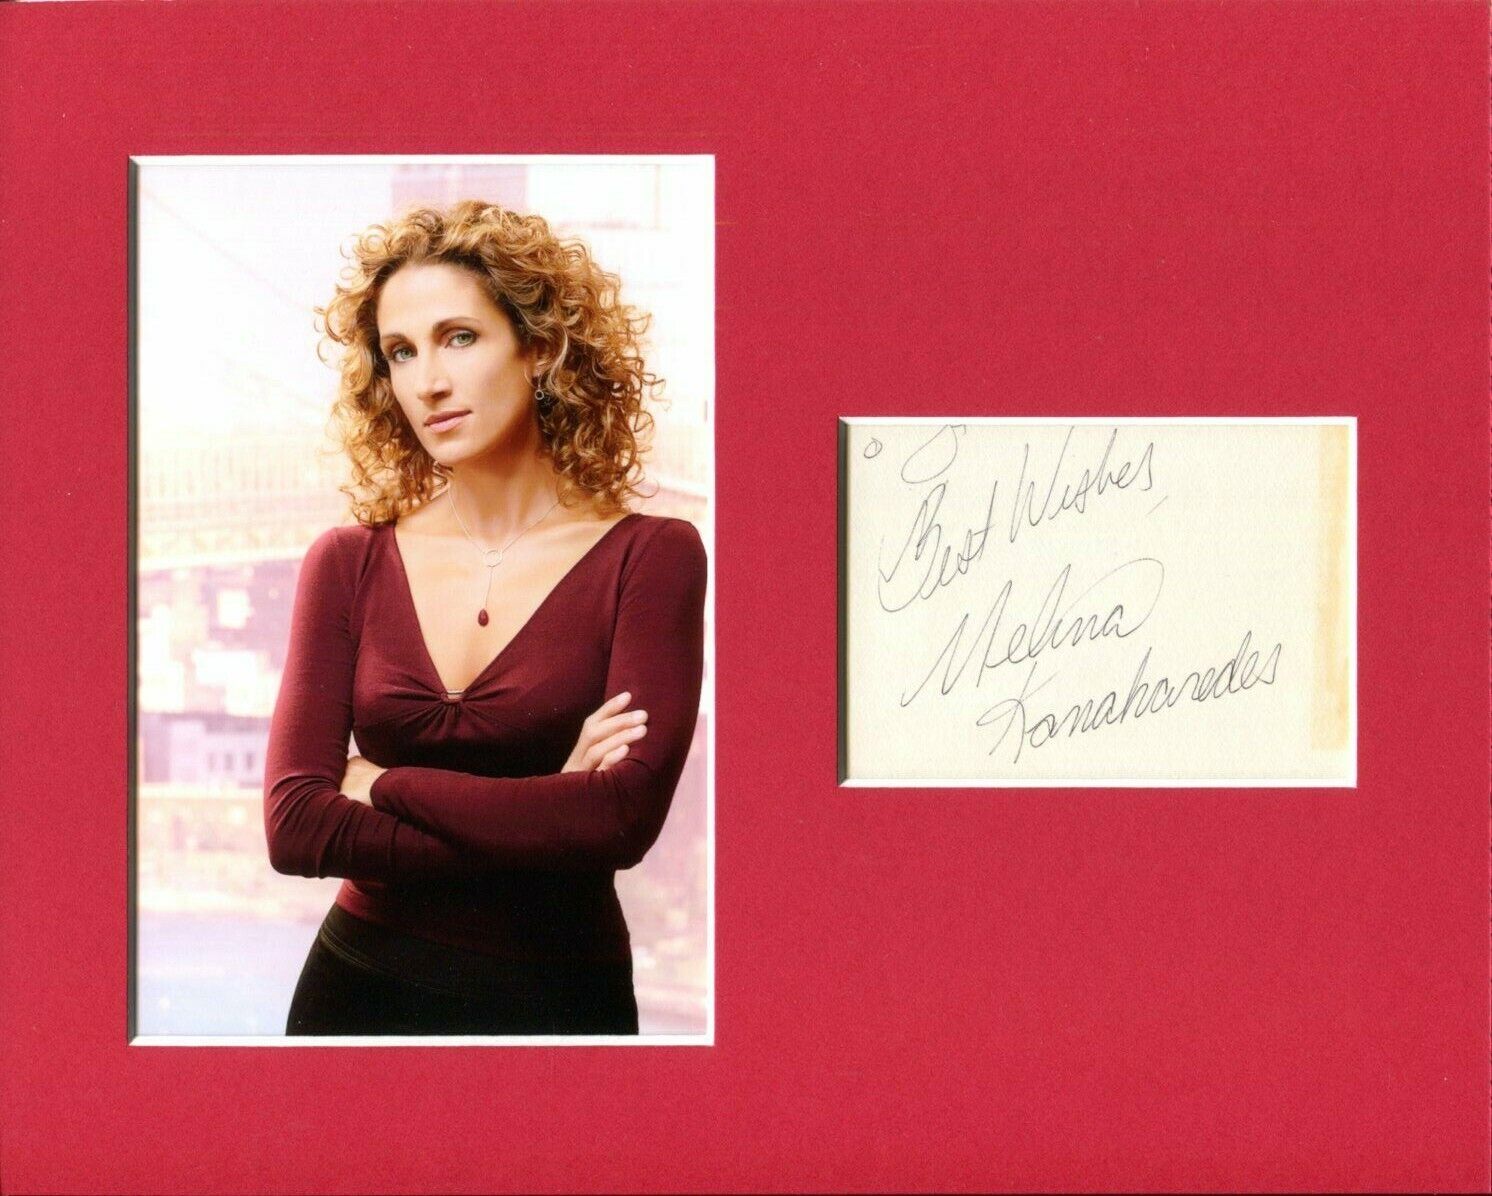 Melina Kanakaredes Sexy CSI: NY Providence Snitch Signed Autograph Photo Display